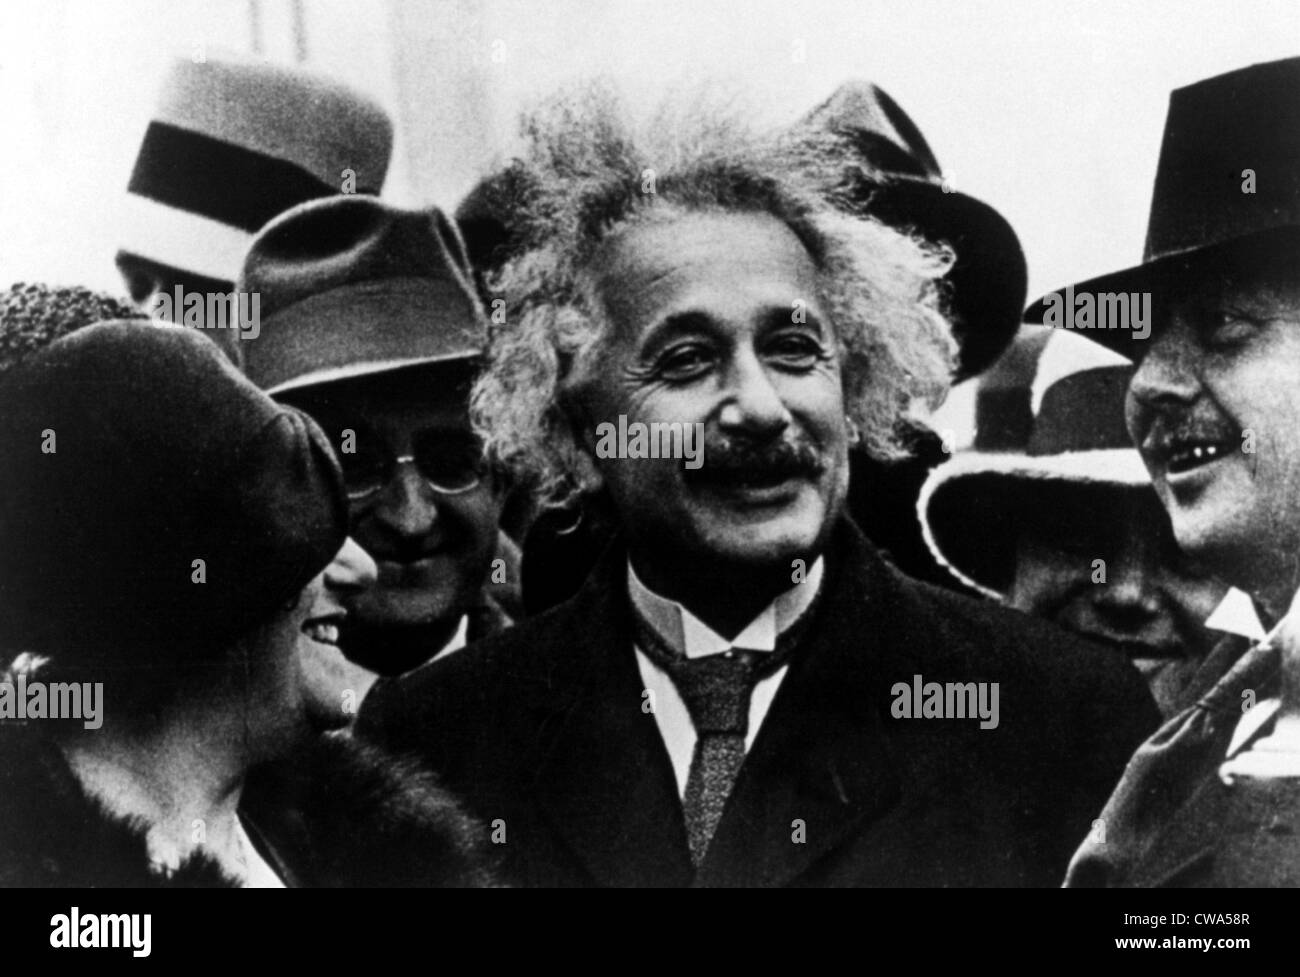 Albert Einstein & épouse Elsa lors d'une visite à l'Amérique dans les années 1920. Avec la permission de la CSU : Archives / Everett Collection Banque D'Images